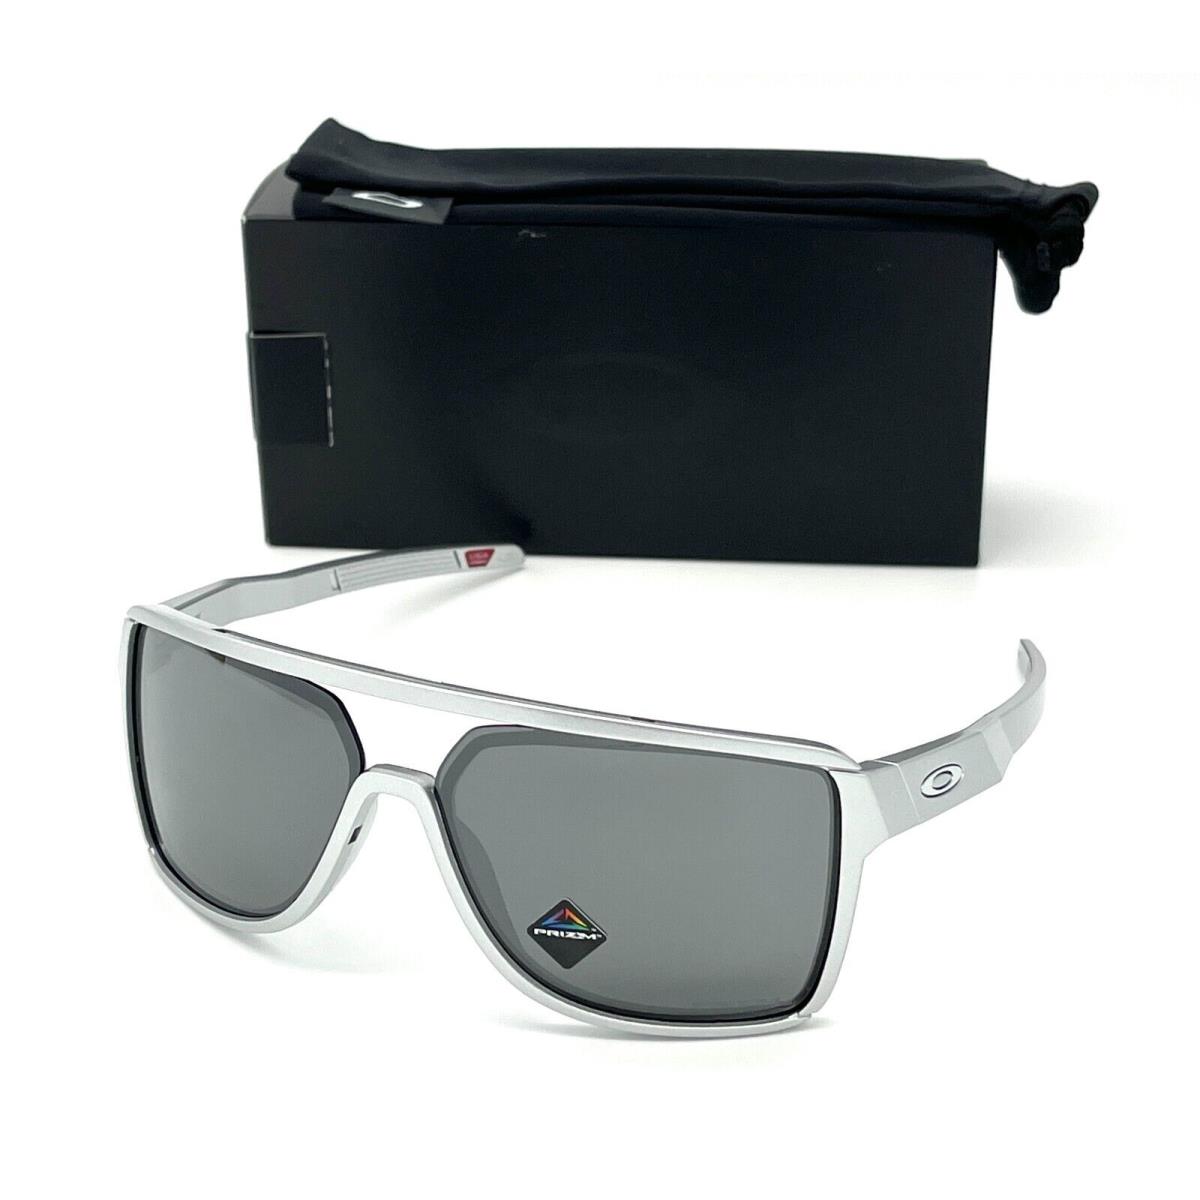 Oakley Castel OO9147-07 X Silver / Prizm Black 63mm Sunglasses - Frame: X Silver, Lens: Prizm Black